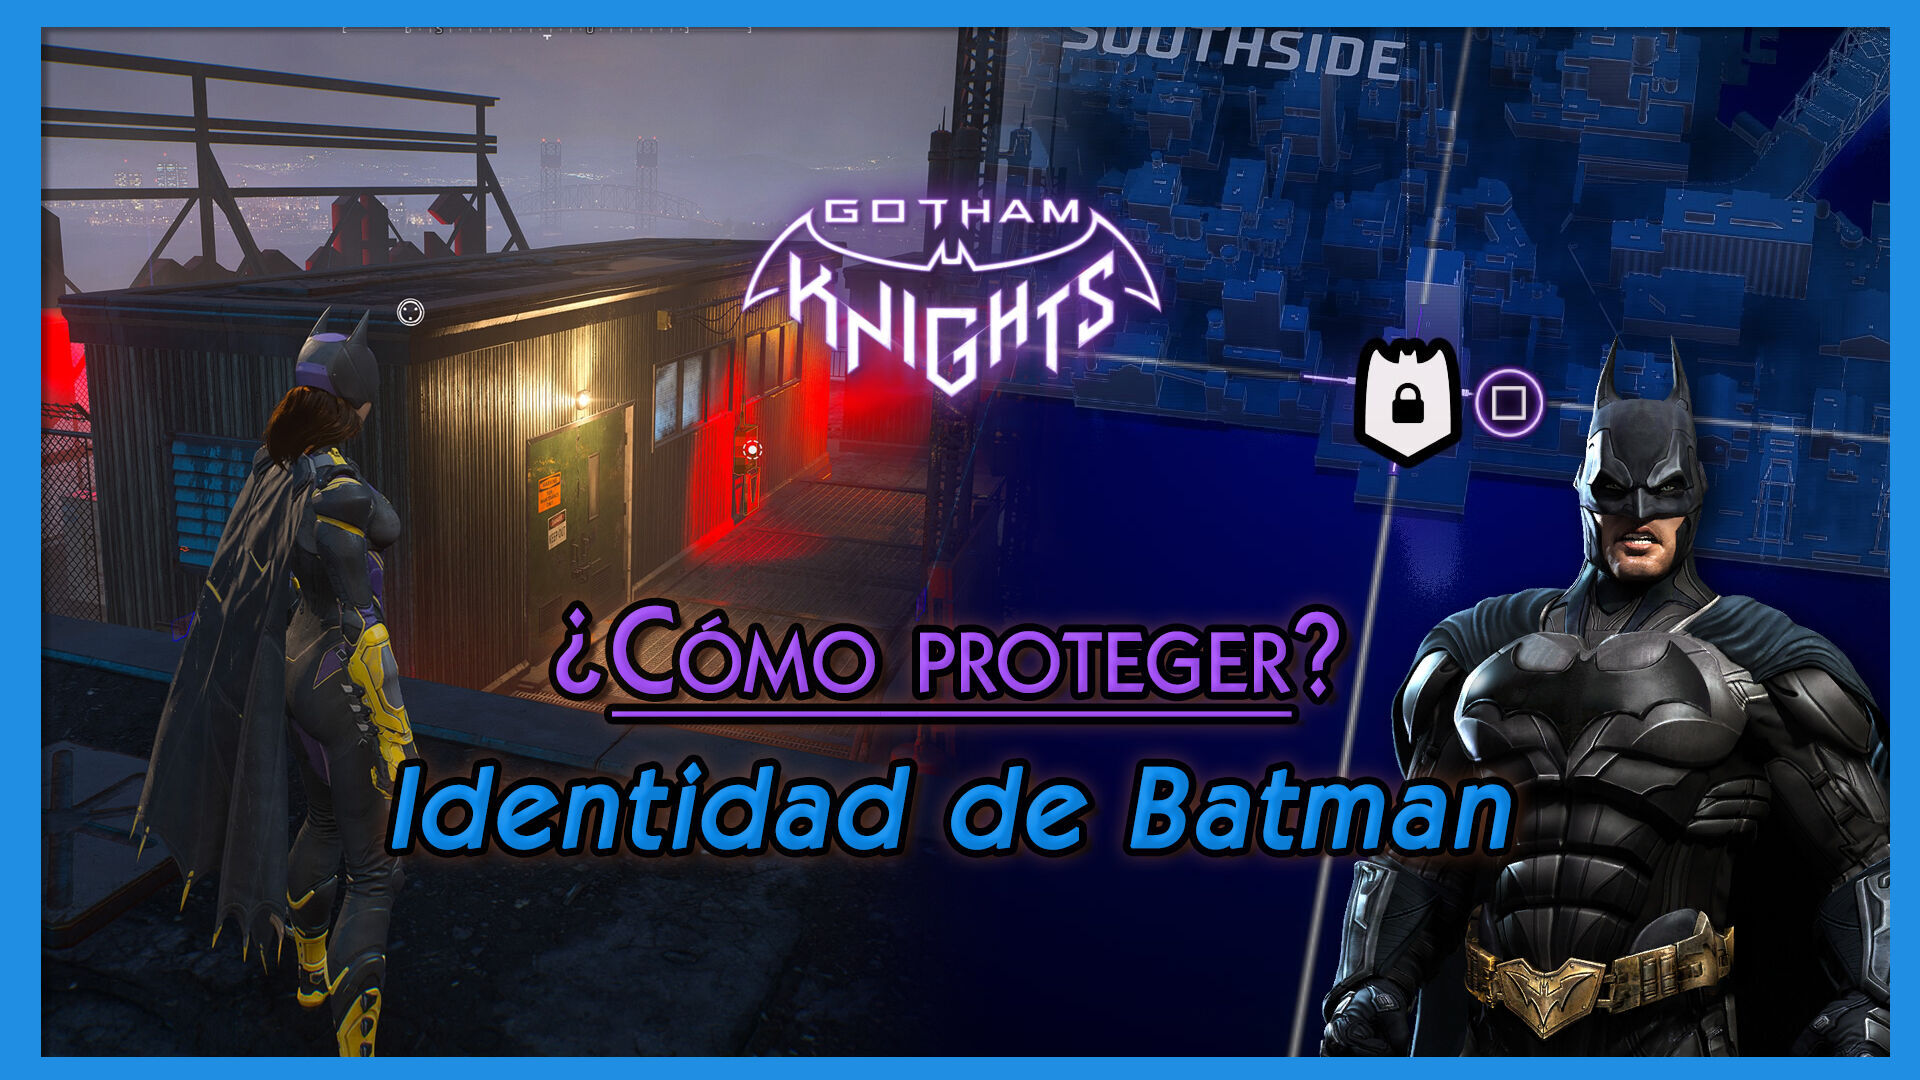 Gotham Knights: Cómo proteger la identidad secreta de Batman